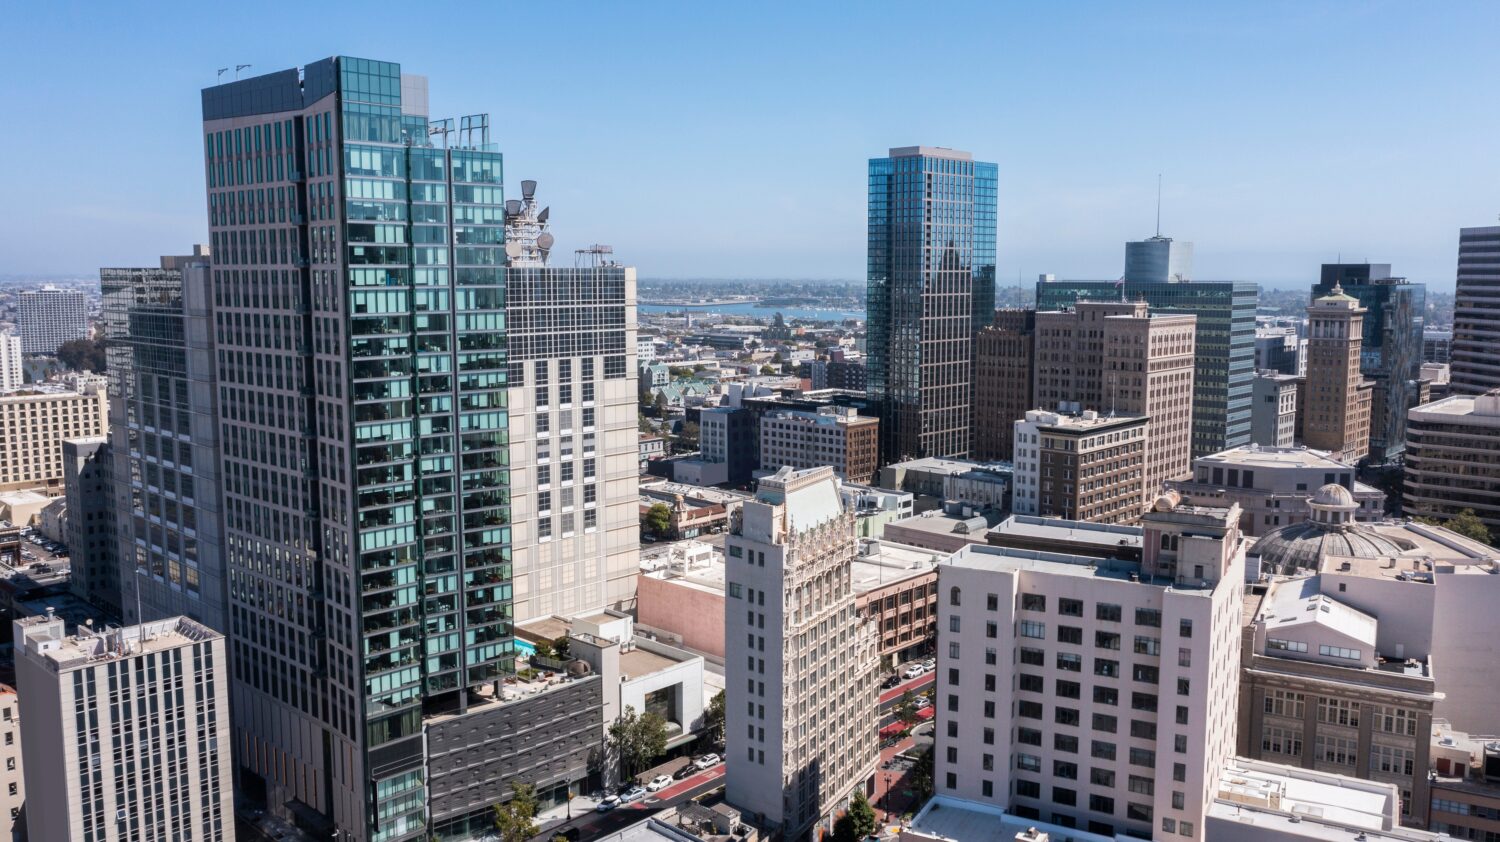 Pomeriggio skyline vista aerea del nucleo urbano del centro di Oakland, California, USA.